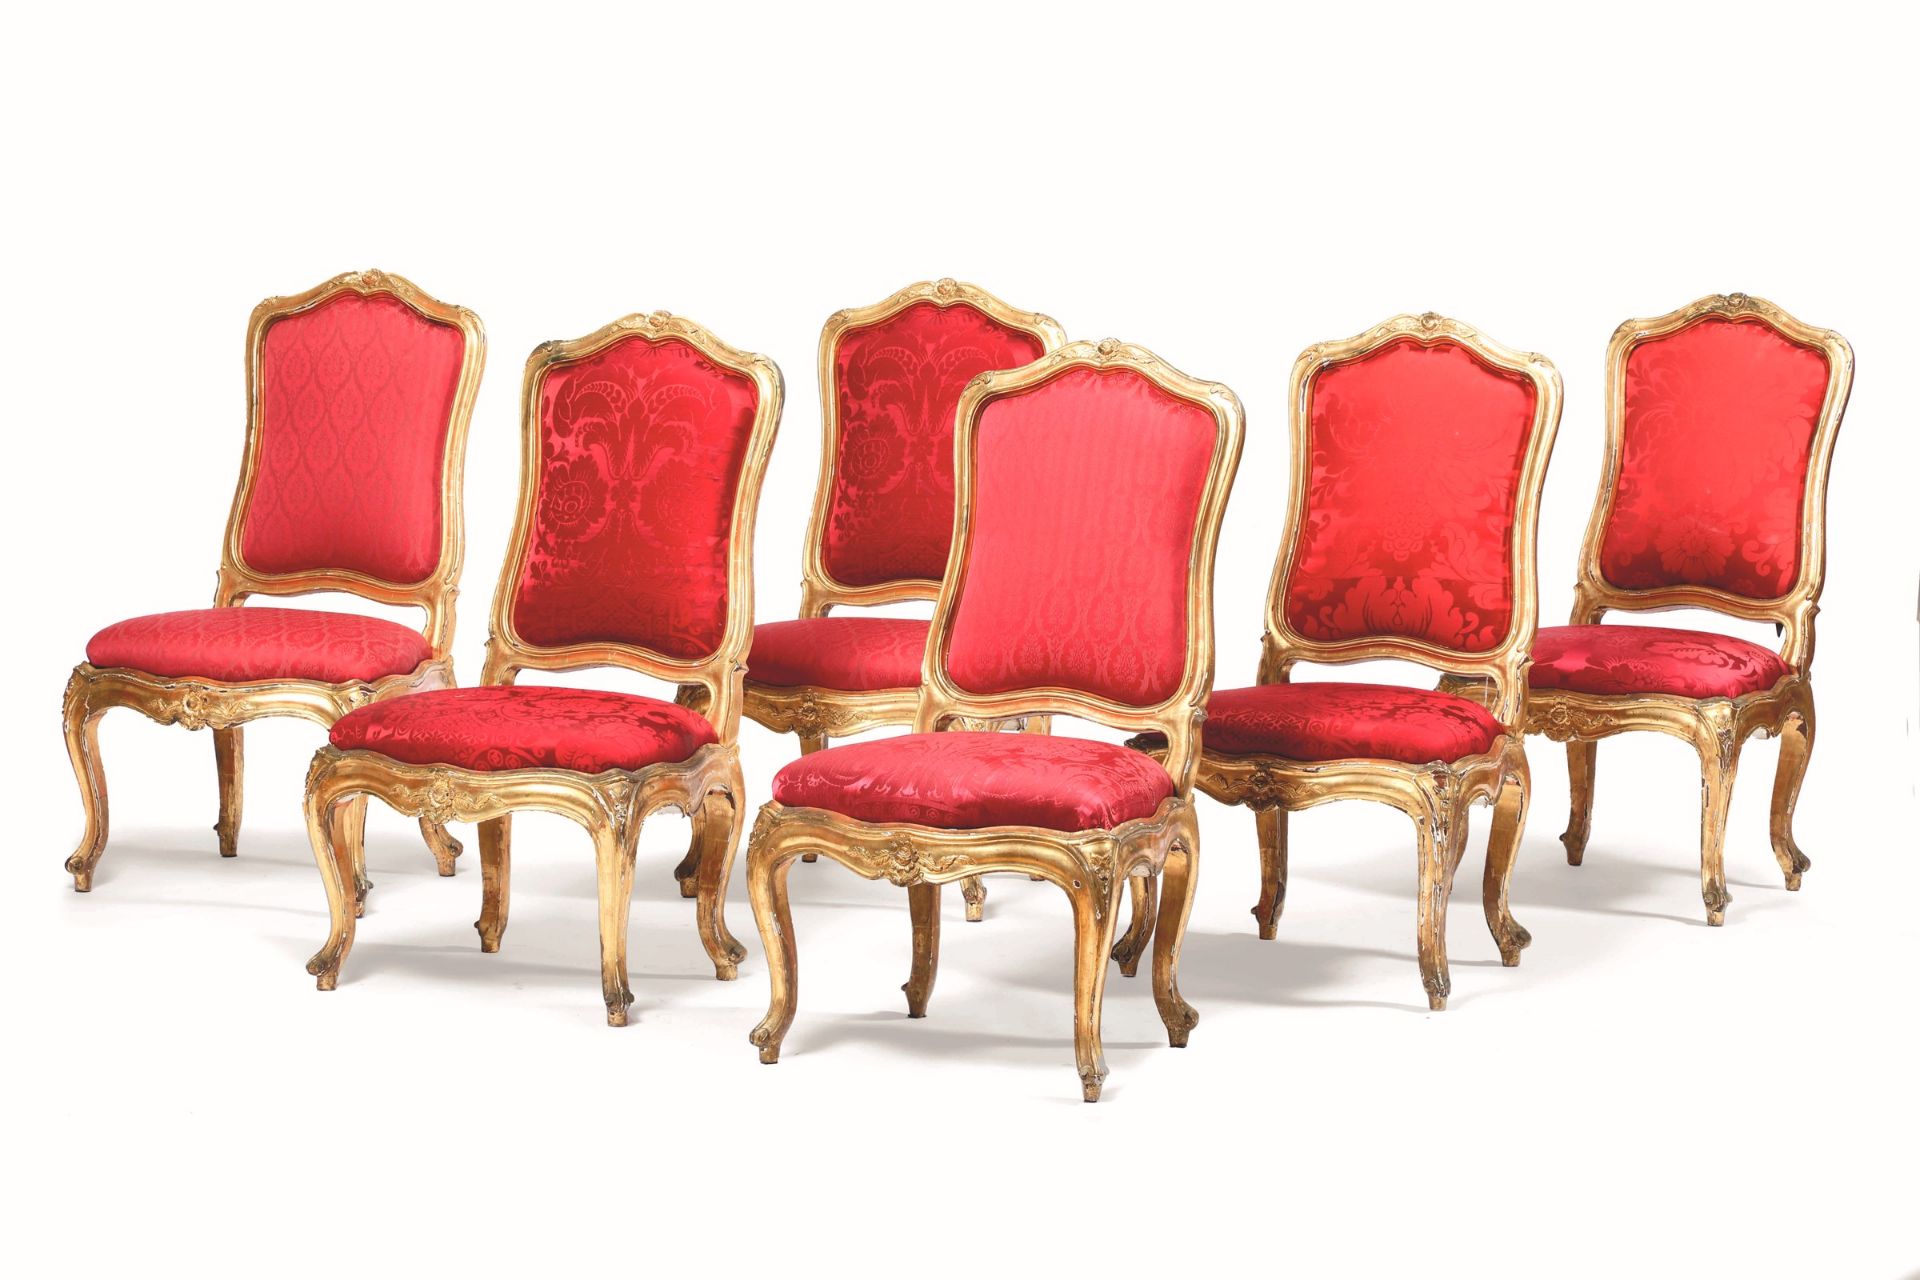 Salotto in legno intagliato e dorato composto da divano e sei sedie, Genova XVIII [...] - Image 2 of 2